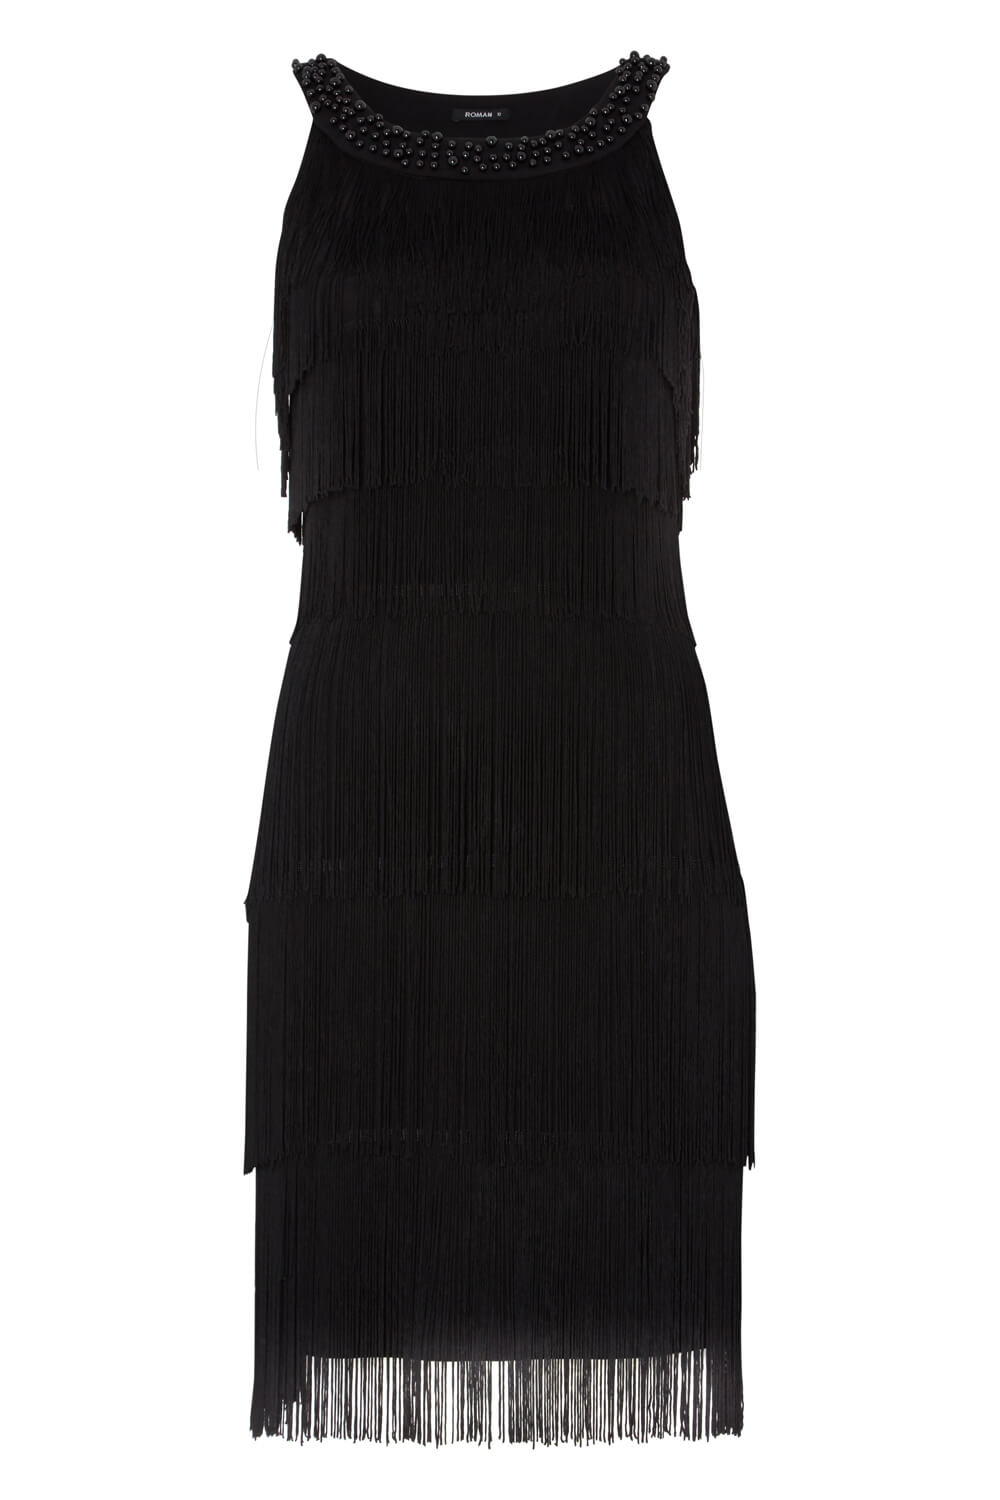 Black Embellished Fringe Flapper Dress , Image 5 of 5